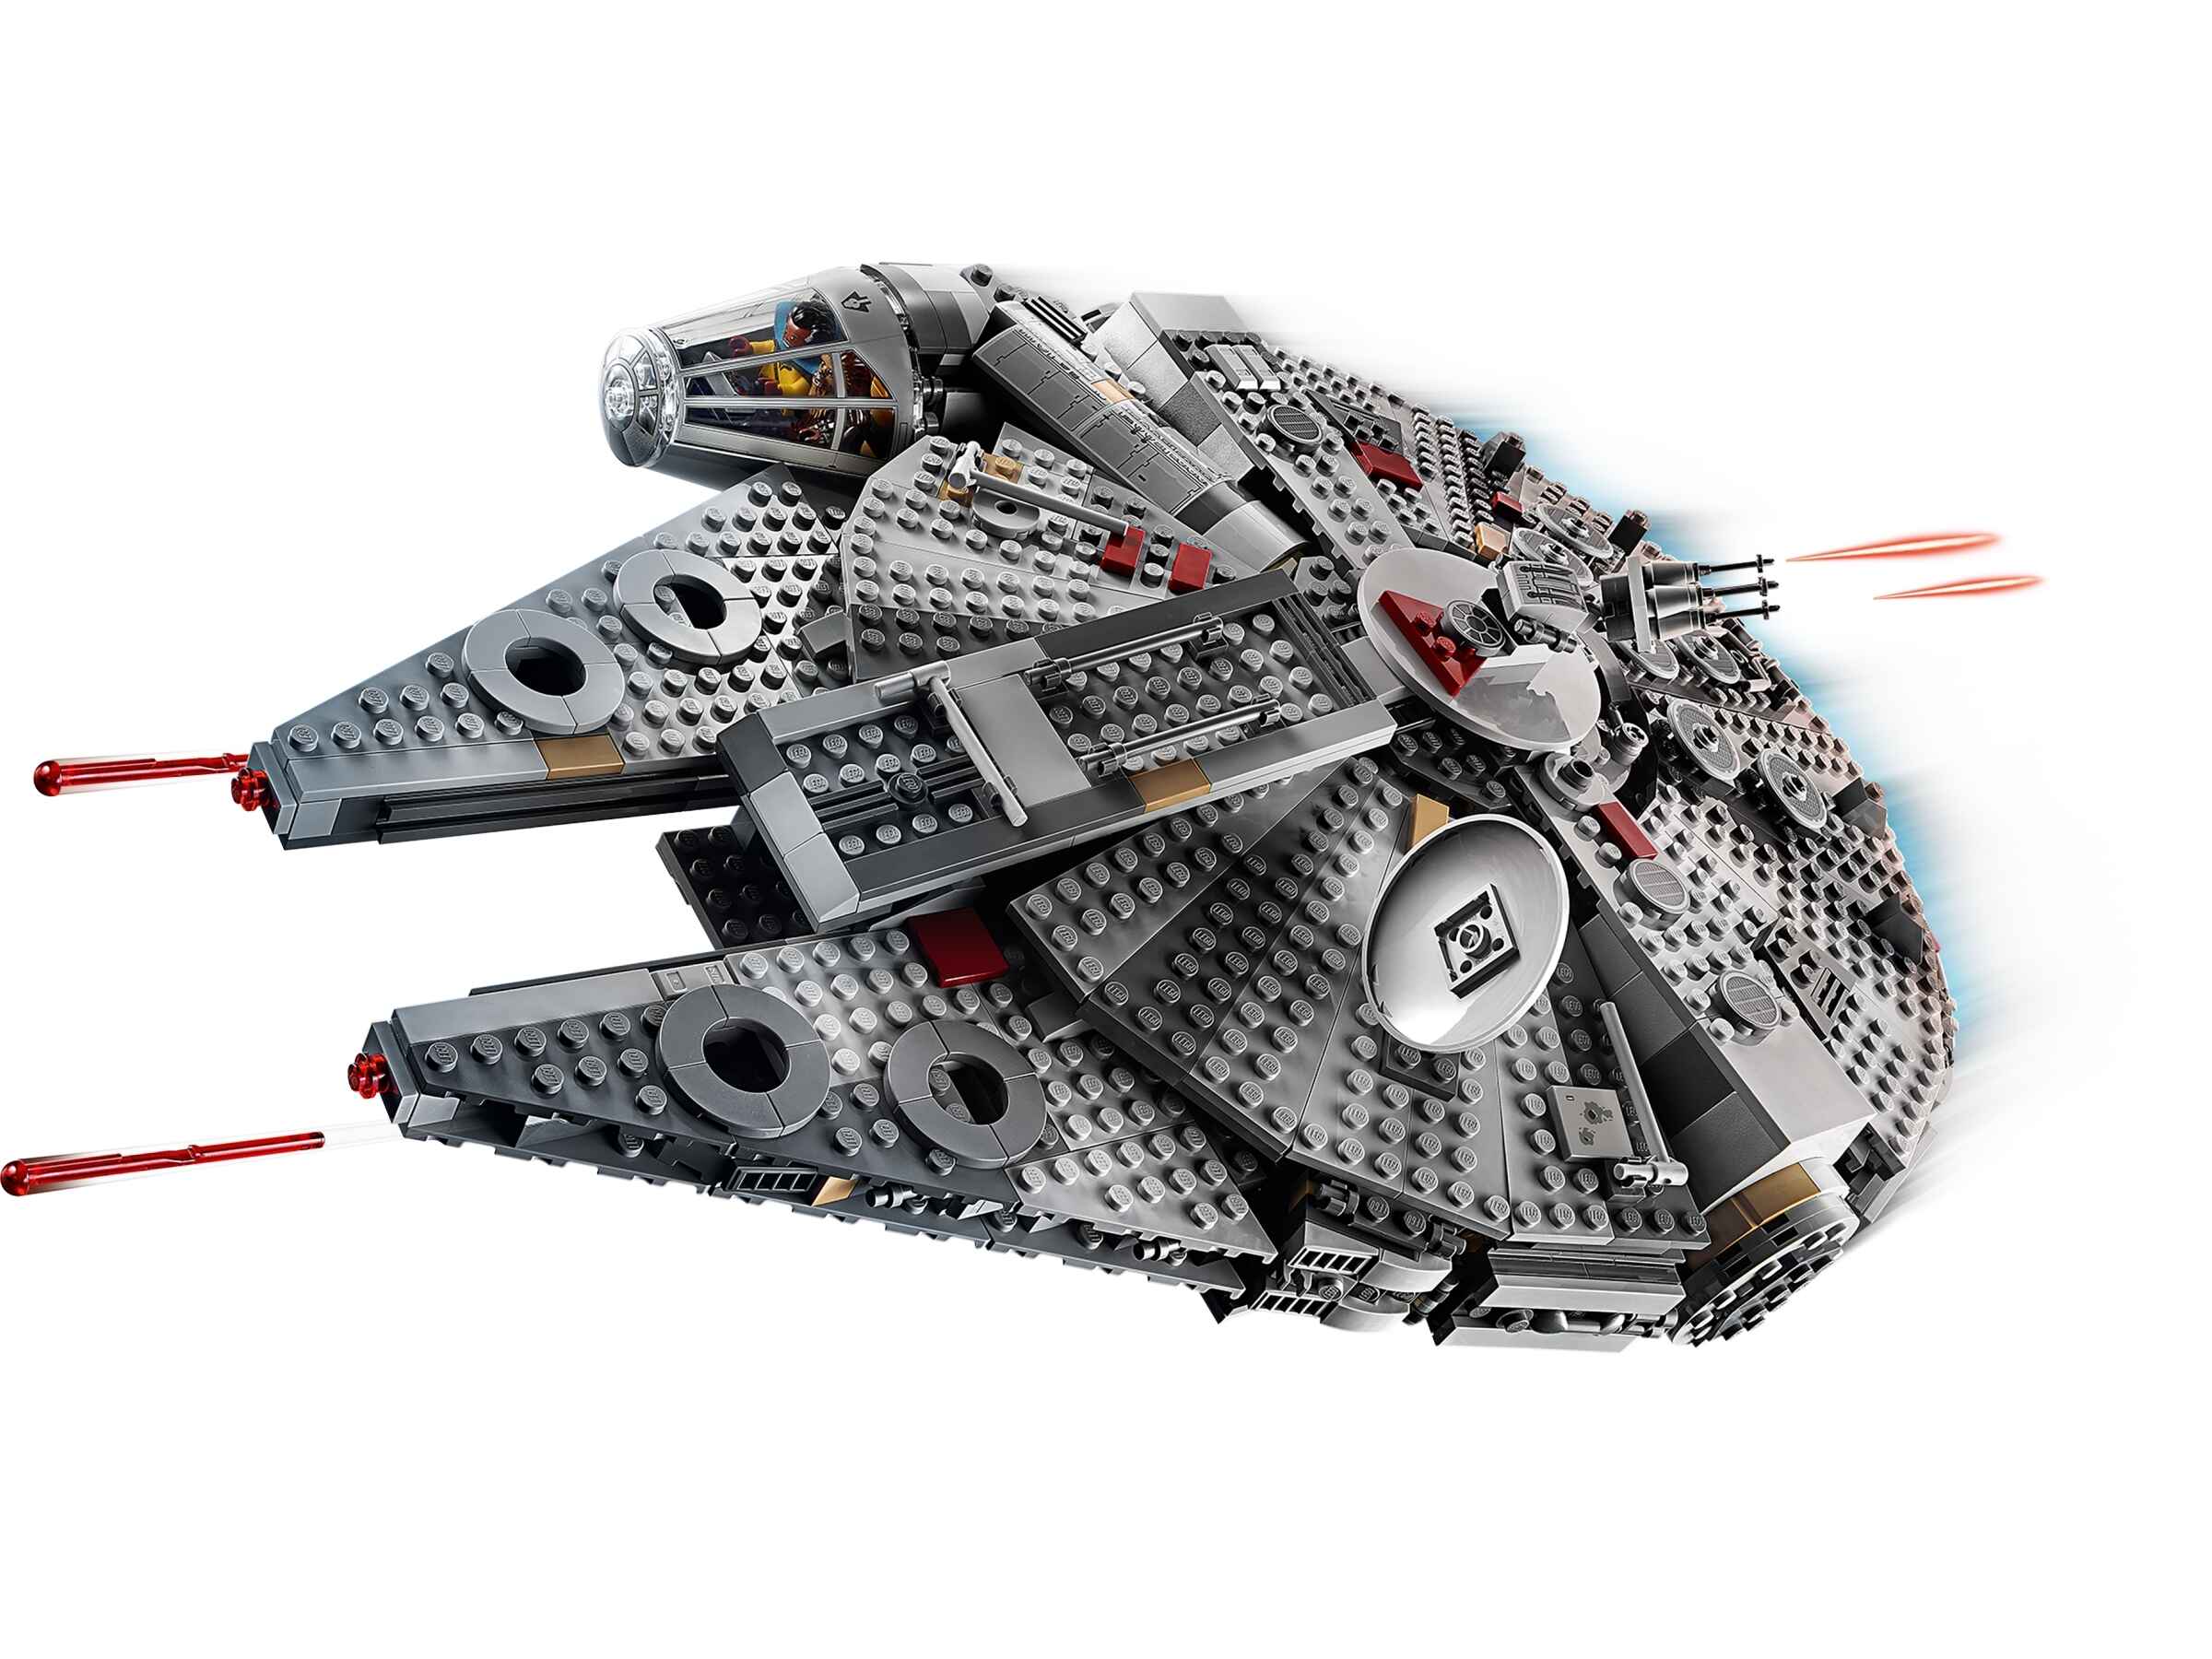 LEGO 75257 Star Wars Millennium Falcon, 5 Minifiguren und 2 Droiden